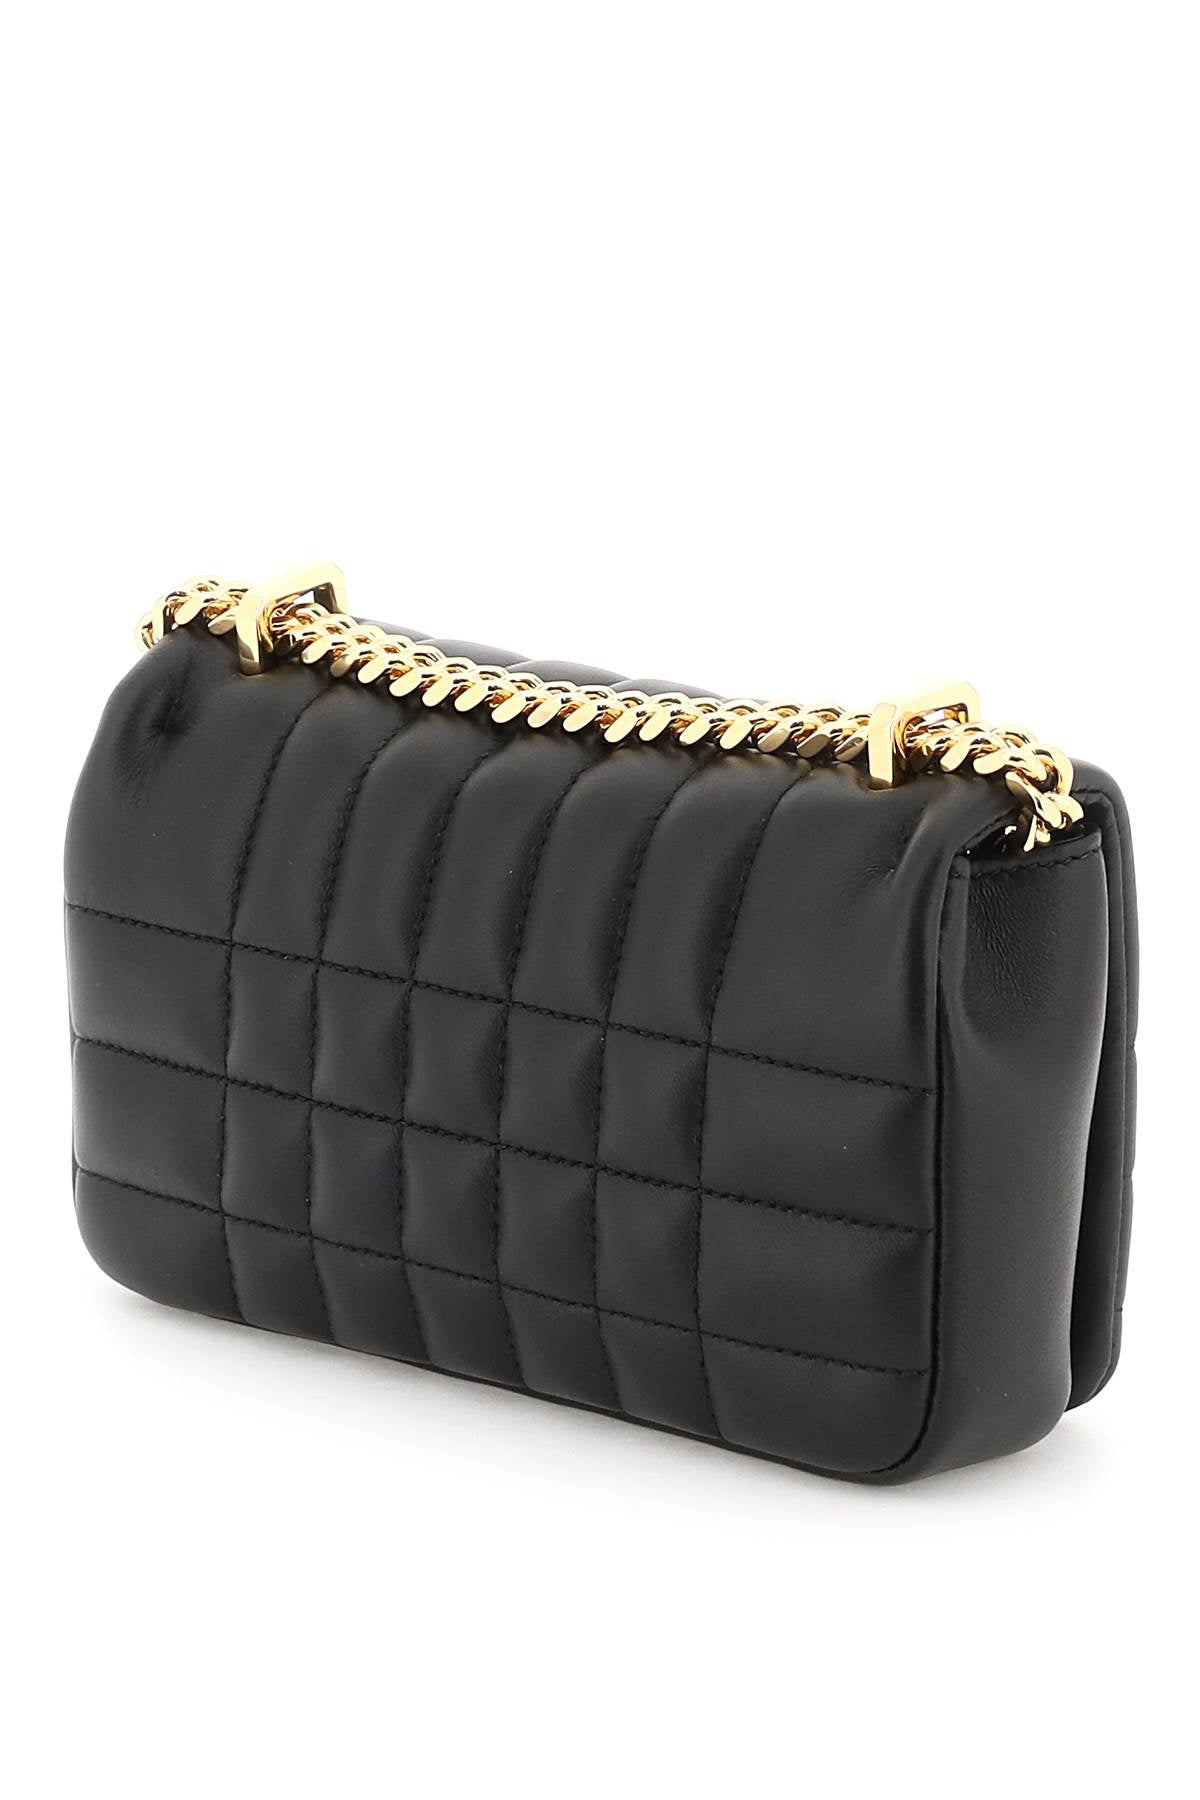 Lola Mini Handbag in Black - Burberry